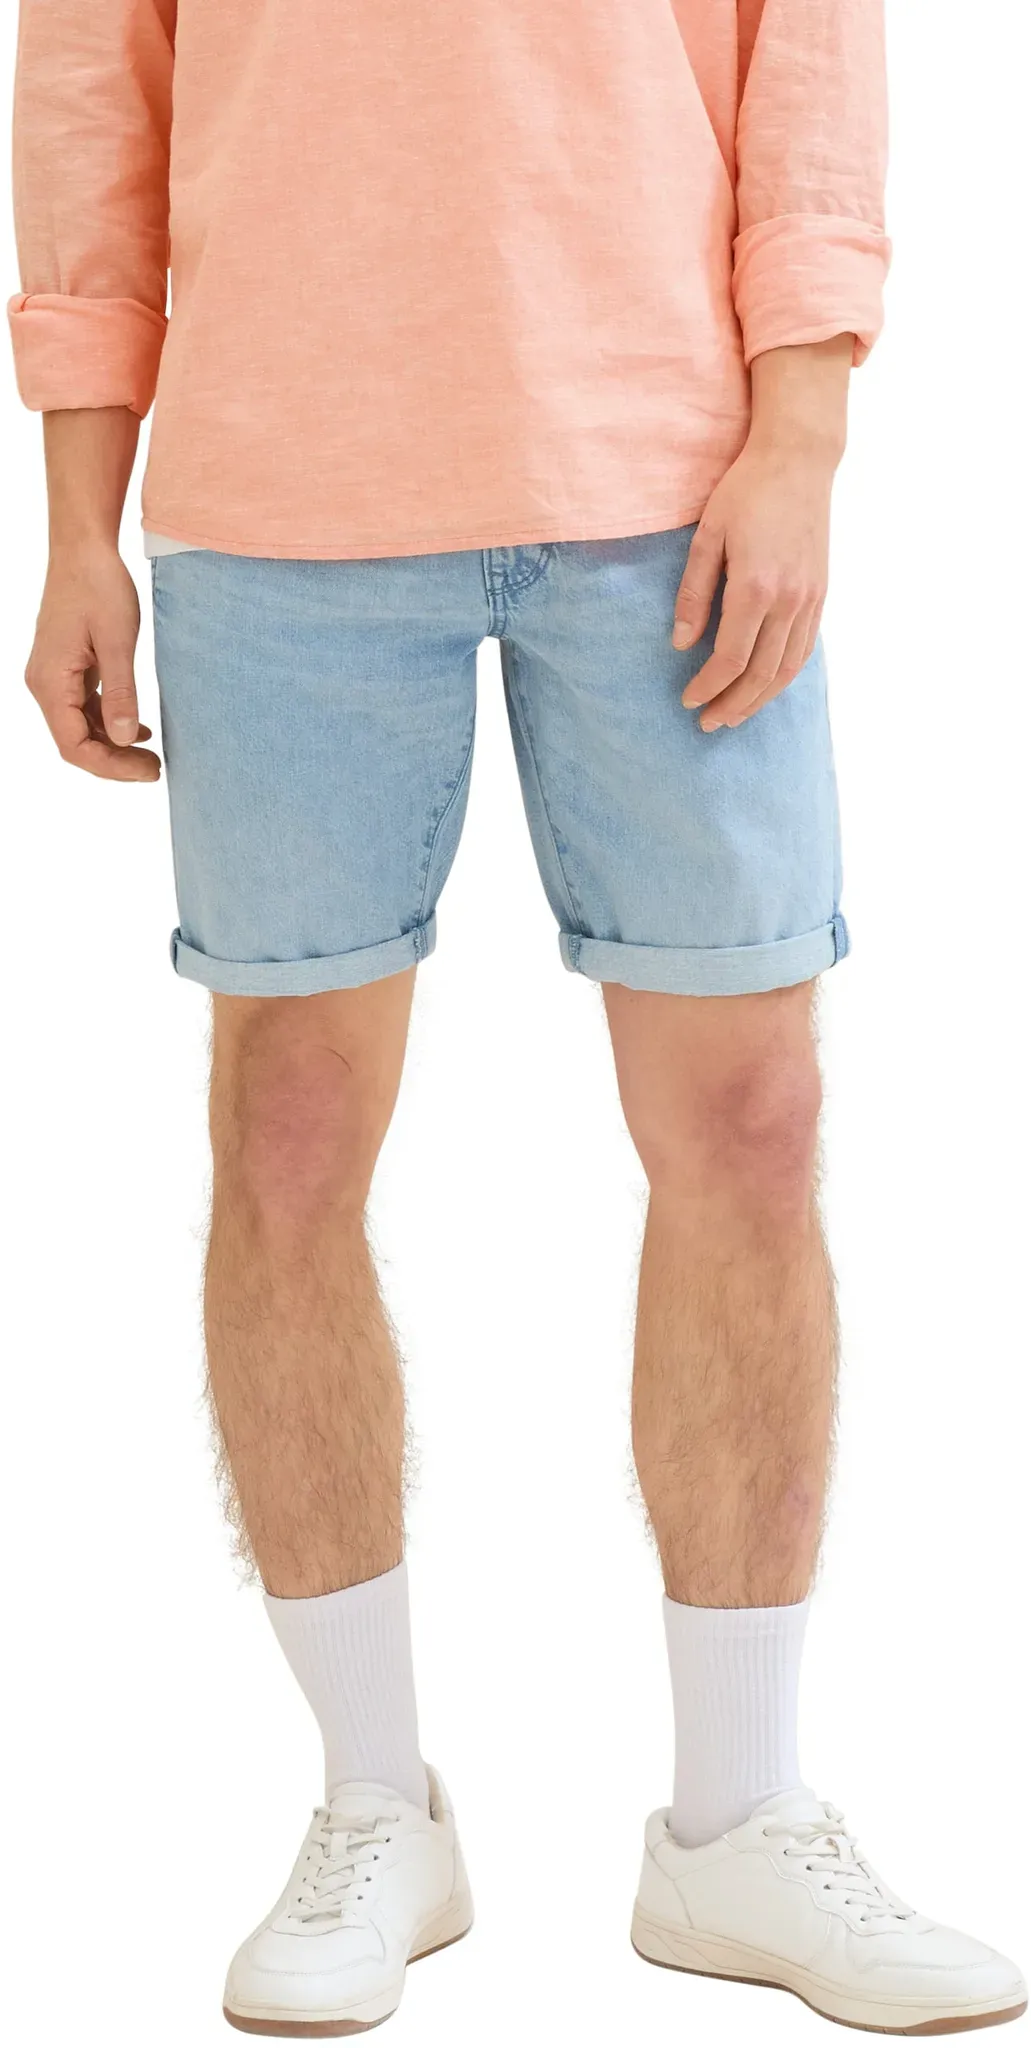 Jeansshorts TOM TAILOR DENIM Gr. XL, N-Gr, blau (used bleached blue denim) Herren Jeans Shorts mit authentischer Waschung